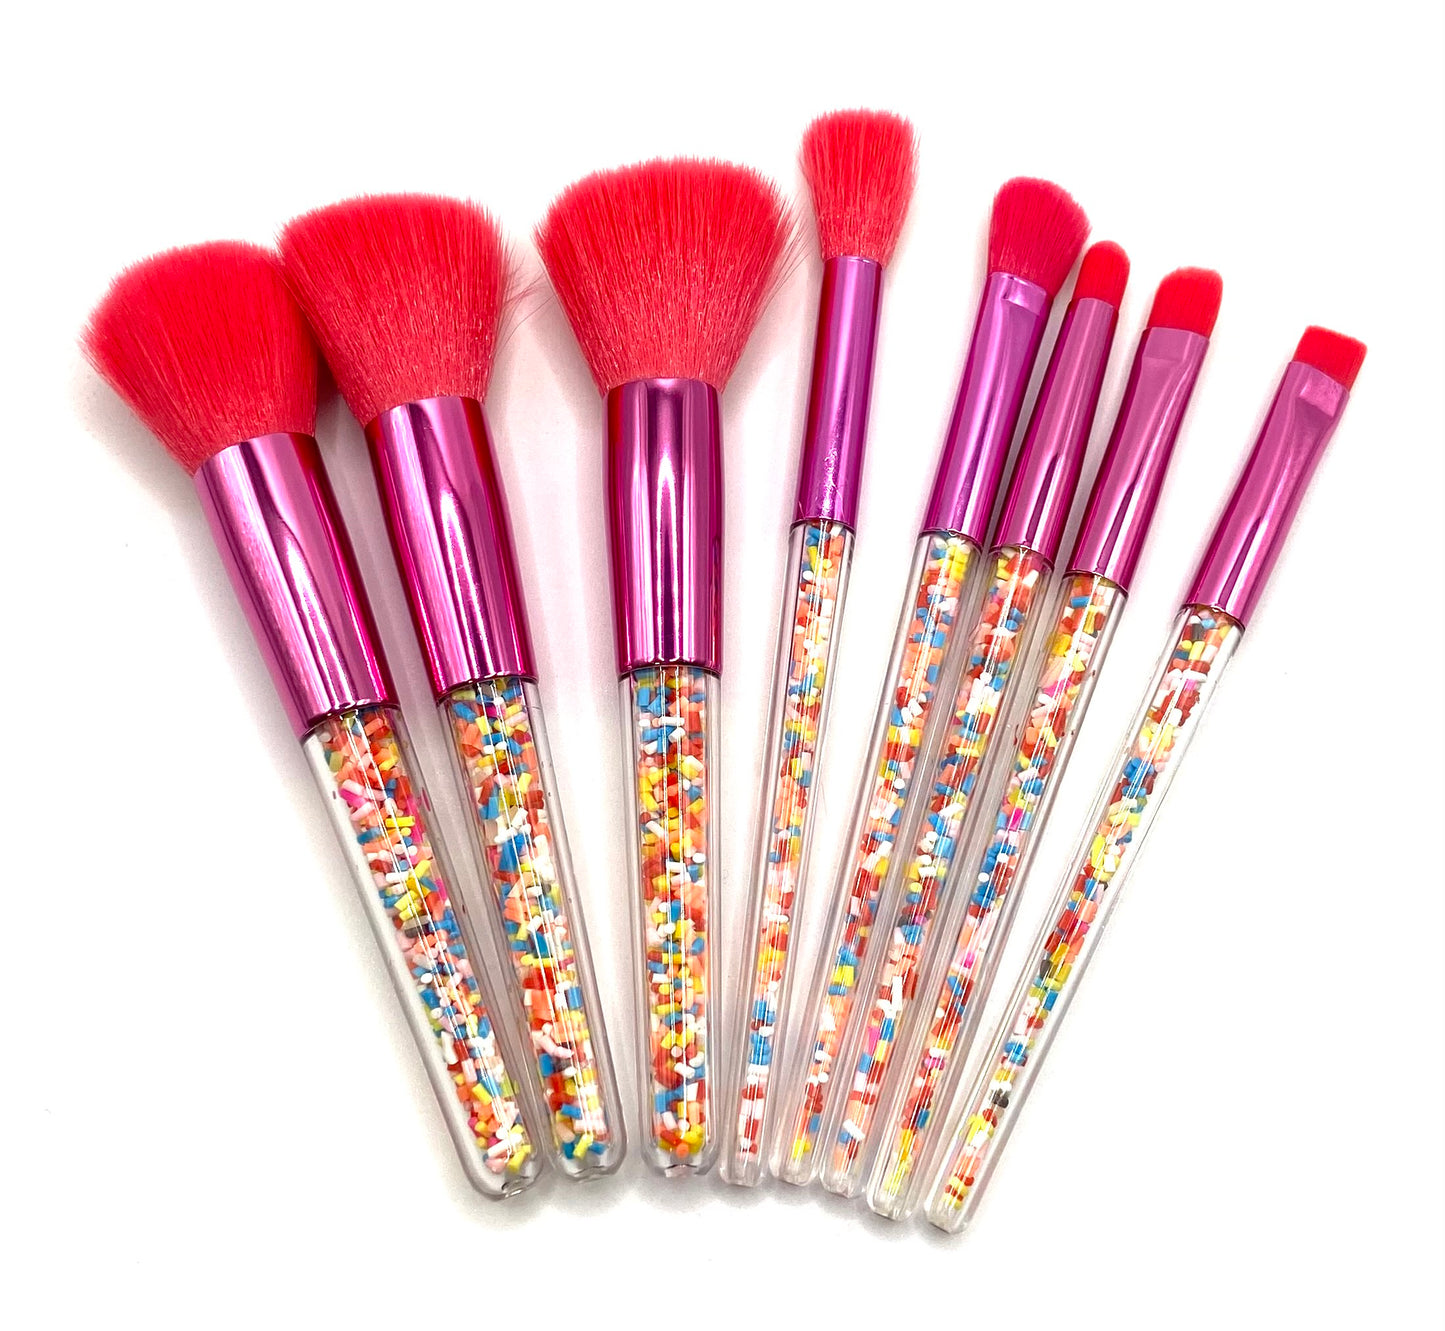 Pink Sprinkled Makeup Brushes